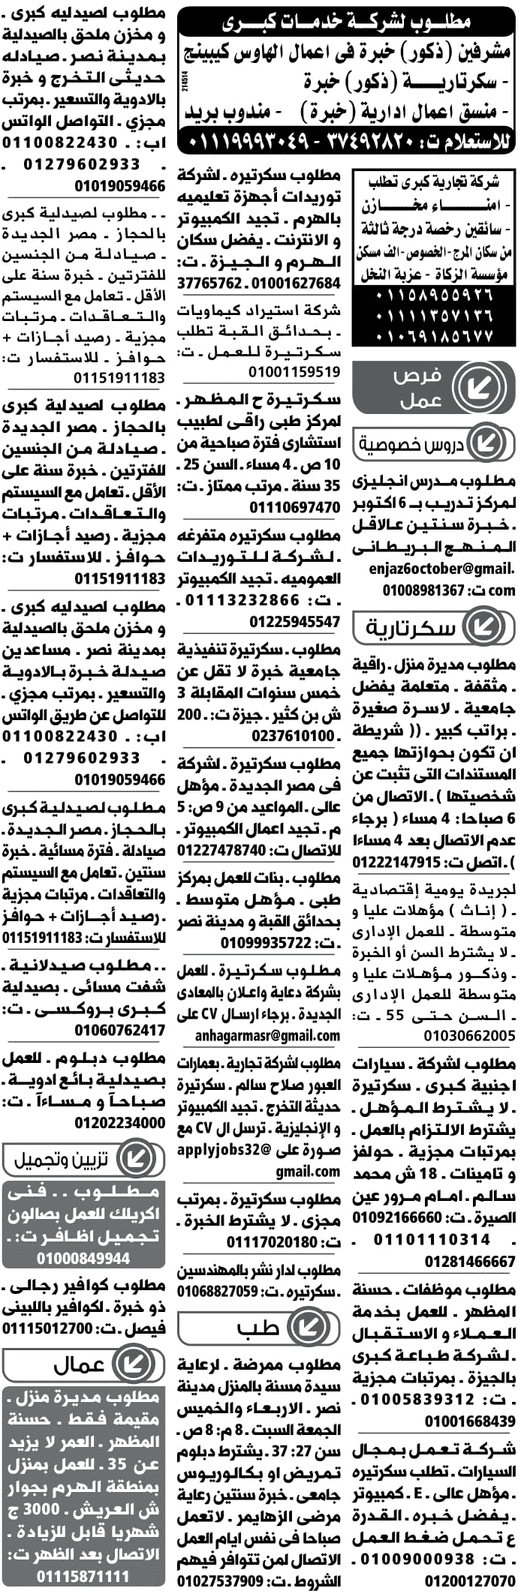 وظائف جريدة الوسيط المصرية اليوم 11/2/2019 19